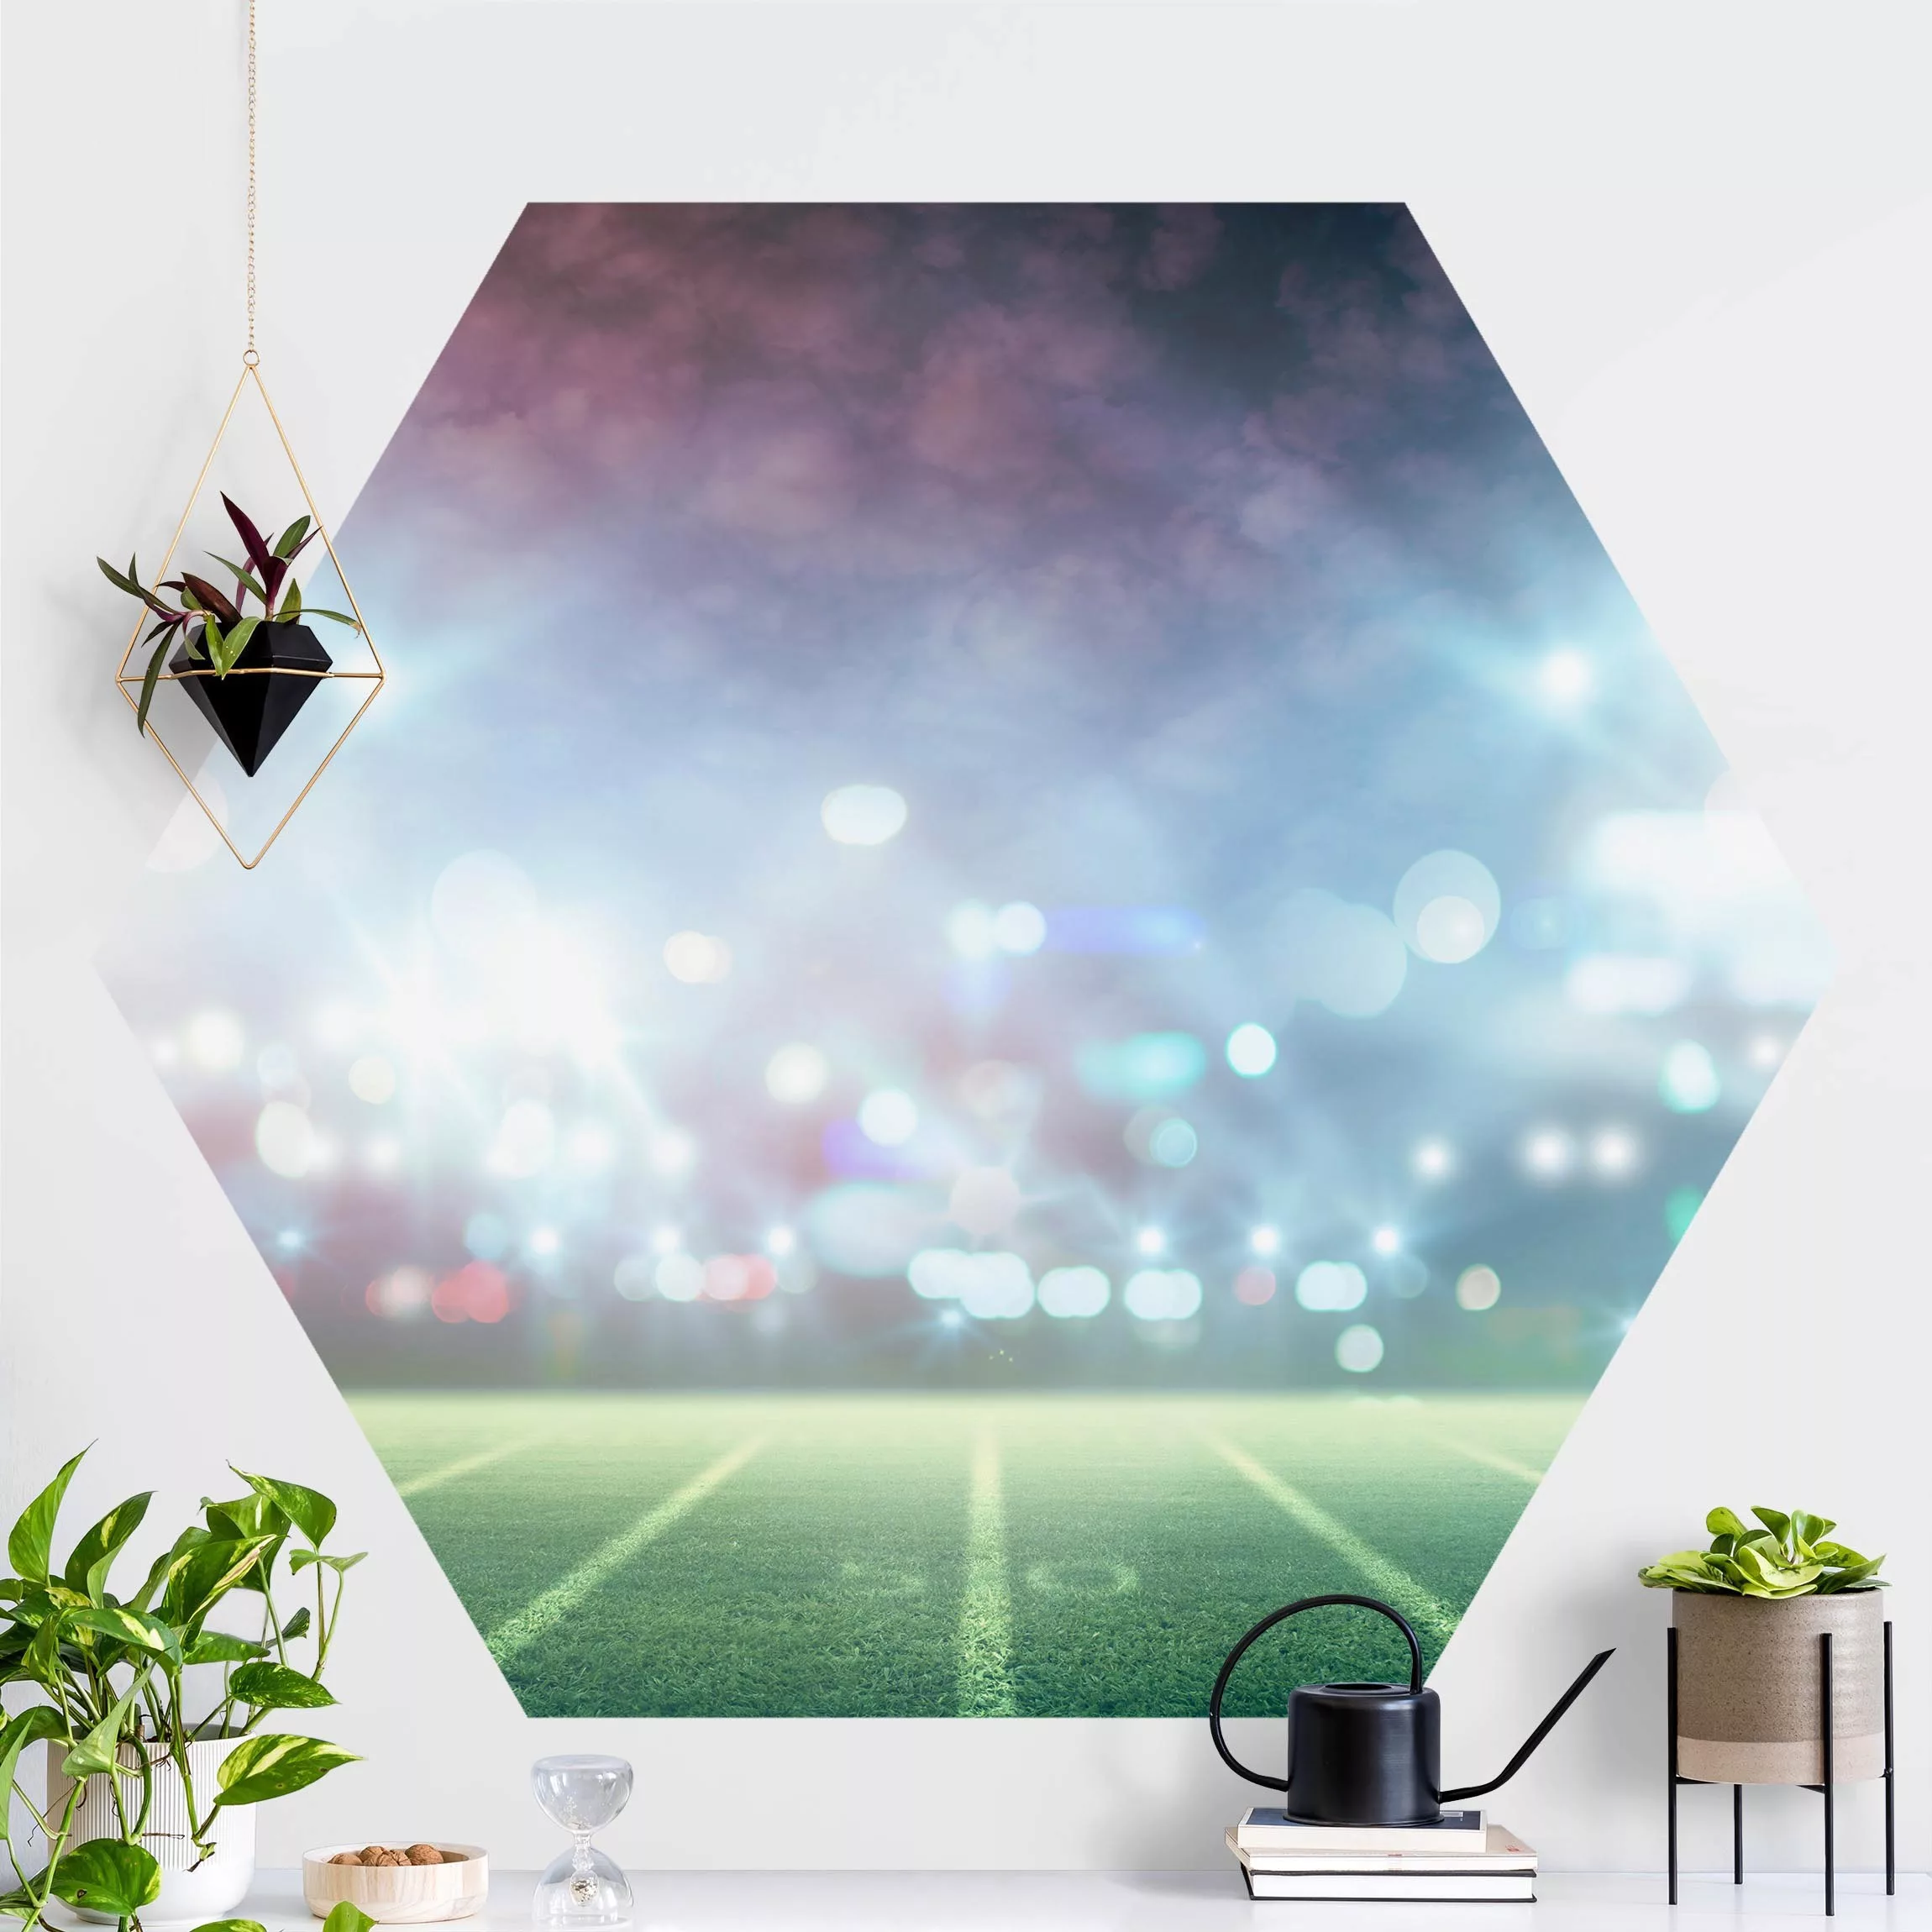 Hexagon Mustertapete selbstklebend Sportplatz Scheinwerferlicht günstig online kaufen